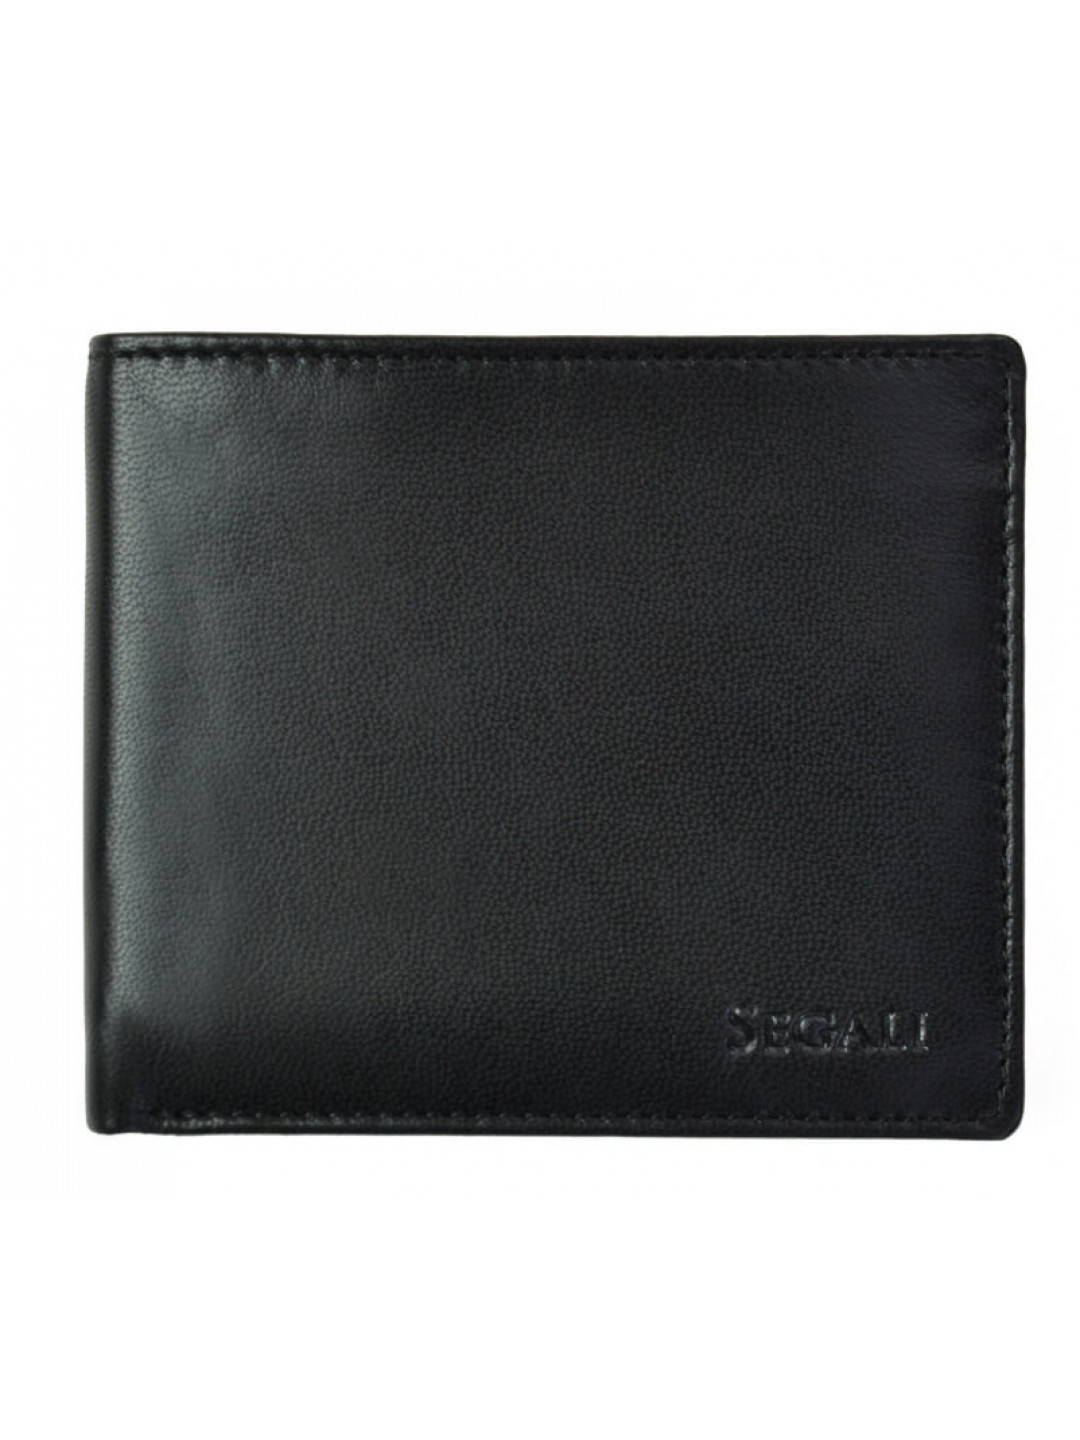 SEGALI Pánská kožená peněženka 7479 black